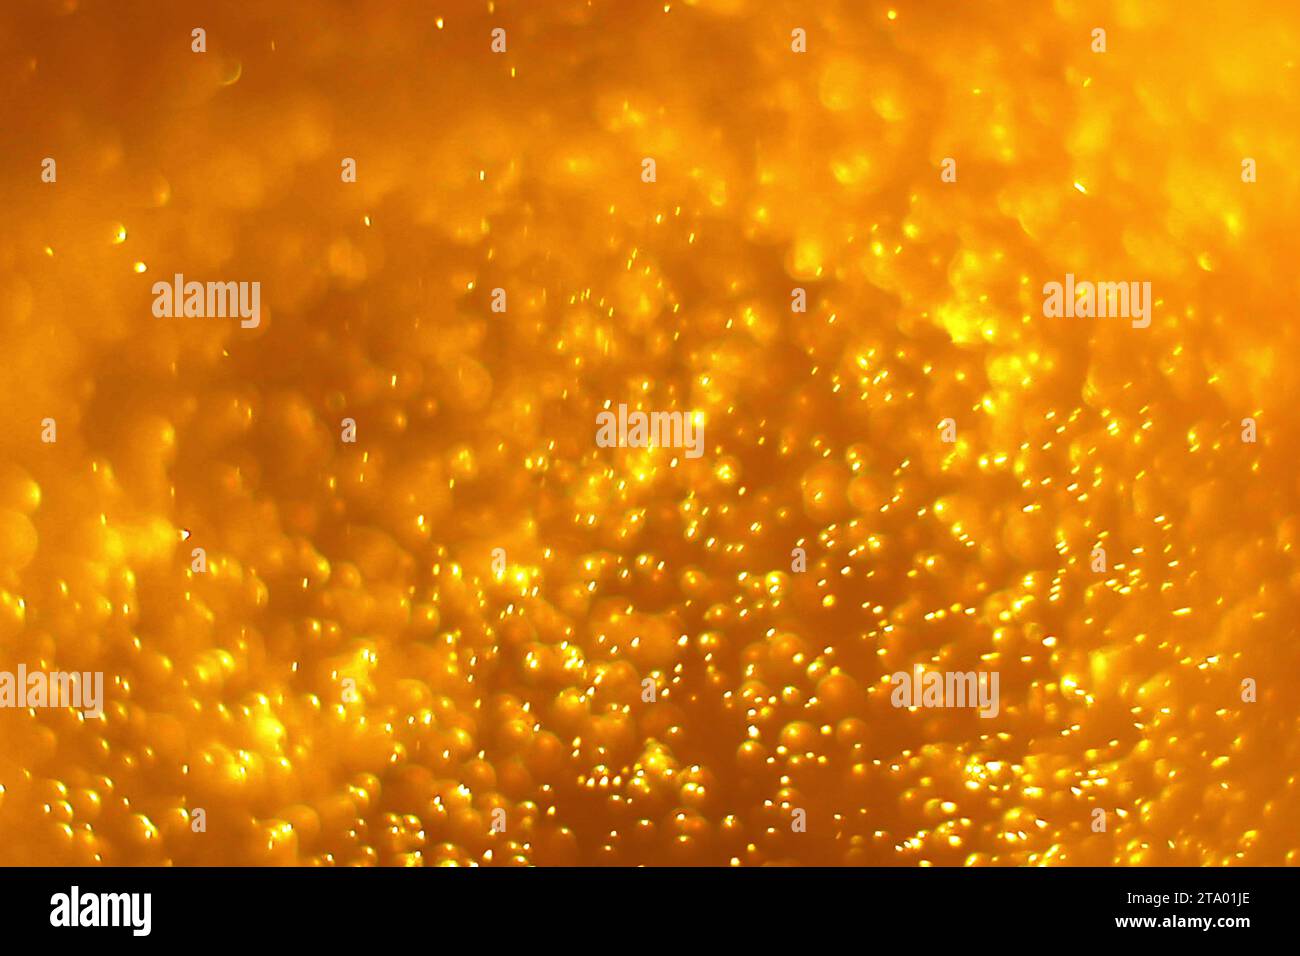 Goldstaubpartikel Hintergrund mit goldenem Lichtfleck Stockfoto